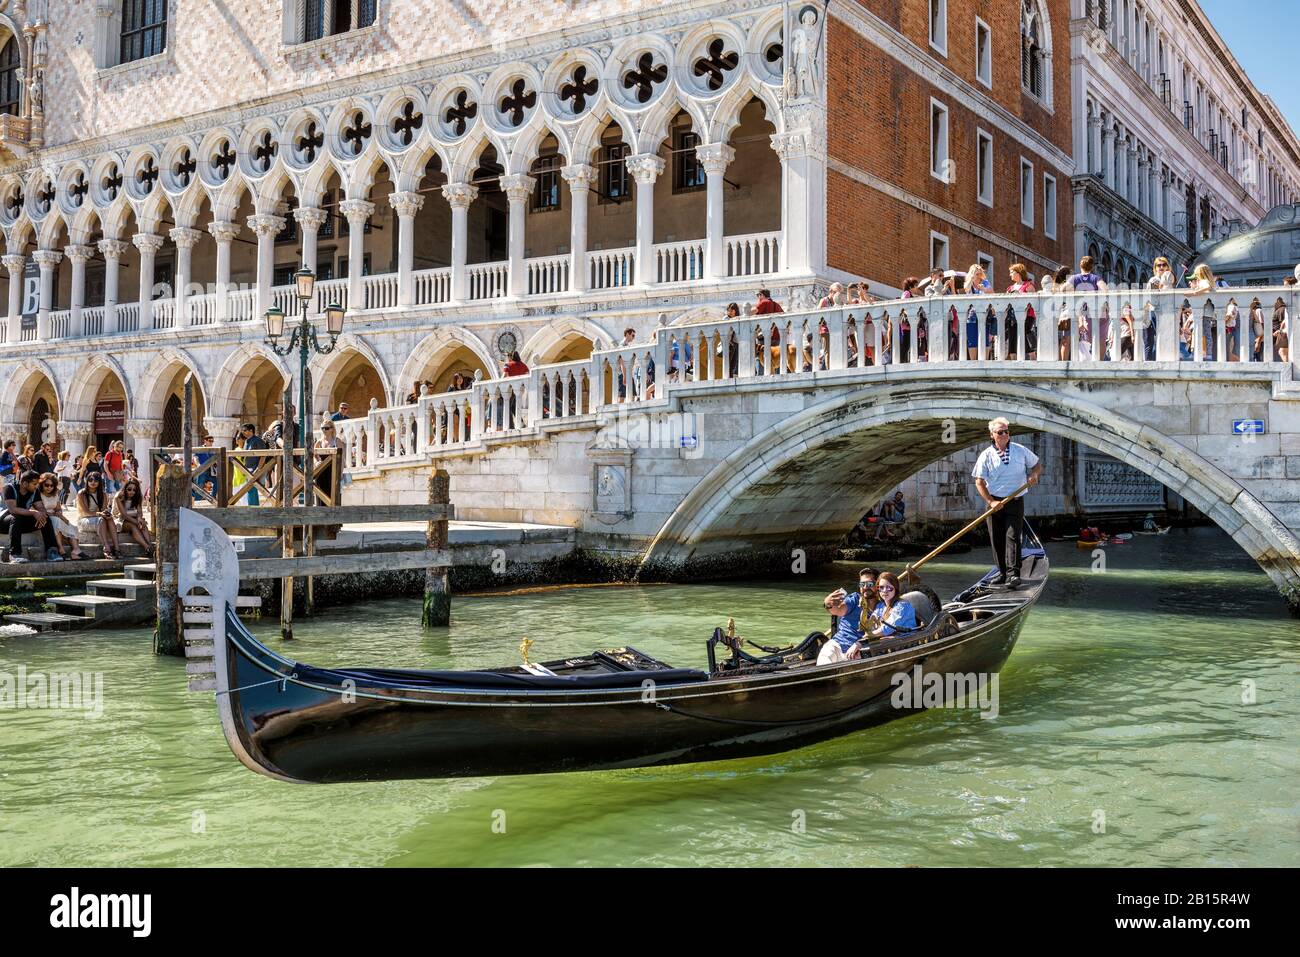 Venise, Italie - 21 mai 2017: La télécabine avec les touristes flotte près du célèbre Palais des Doges (Palazzo Ducale) sur la place St Marc. Palais des Doges i Banque D'Images